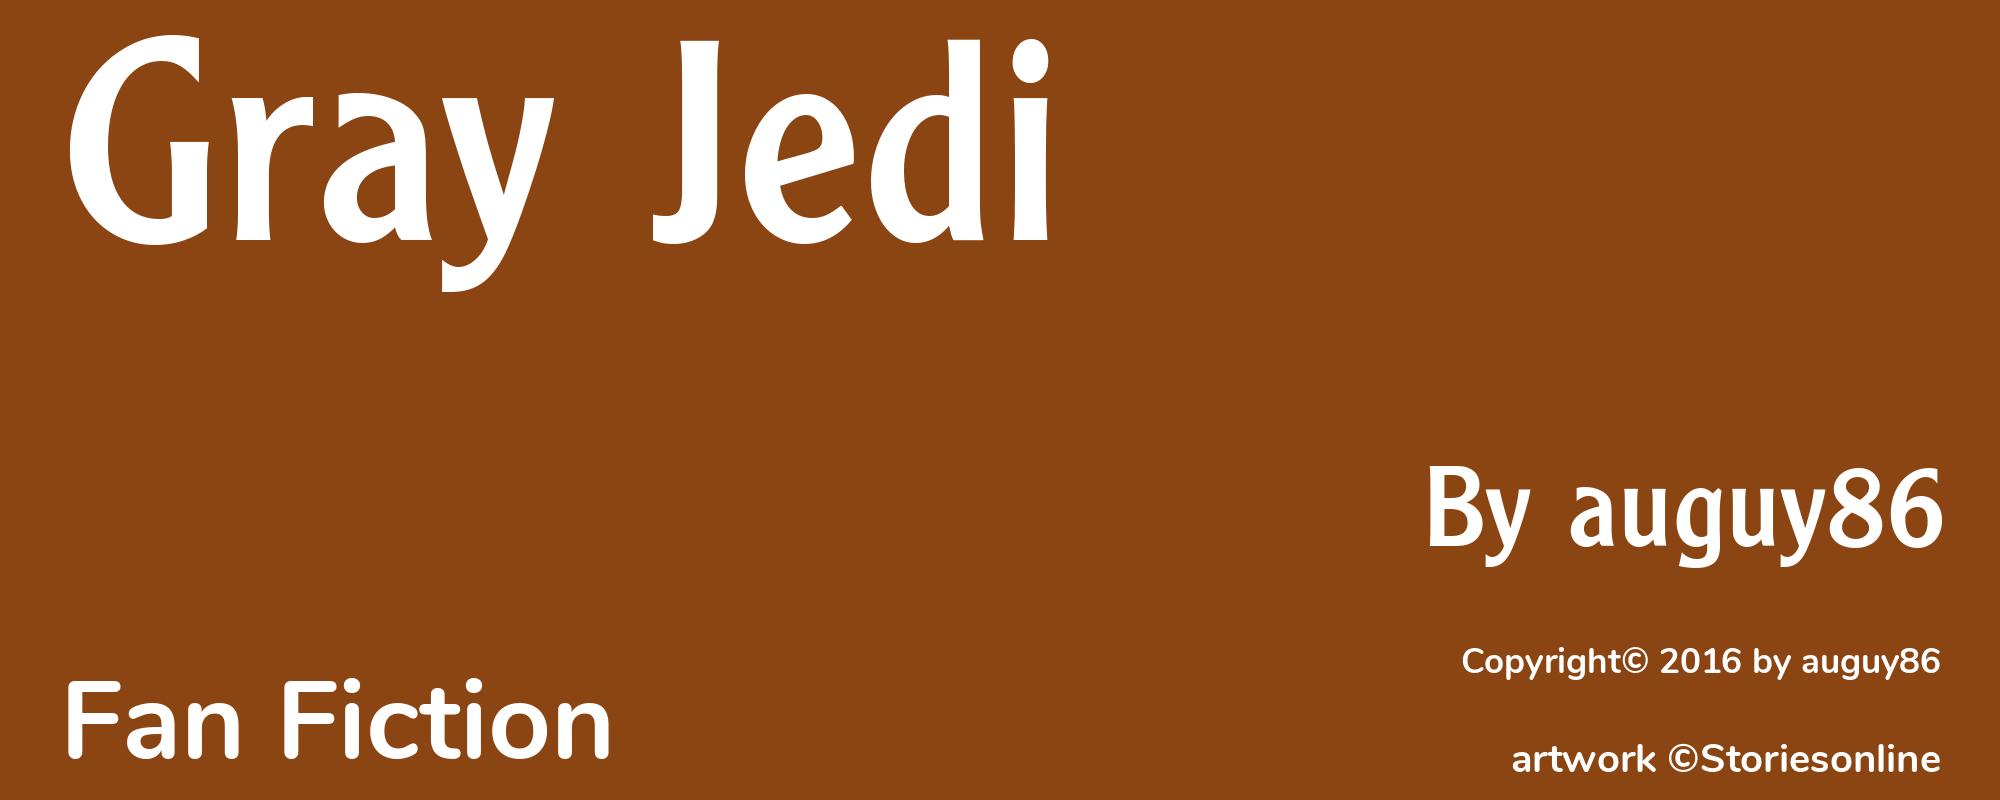 Gray Jedi - Cover